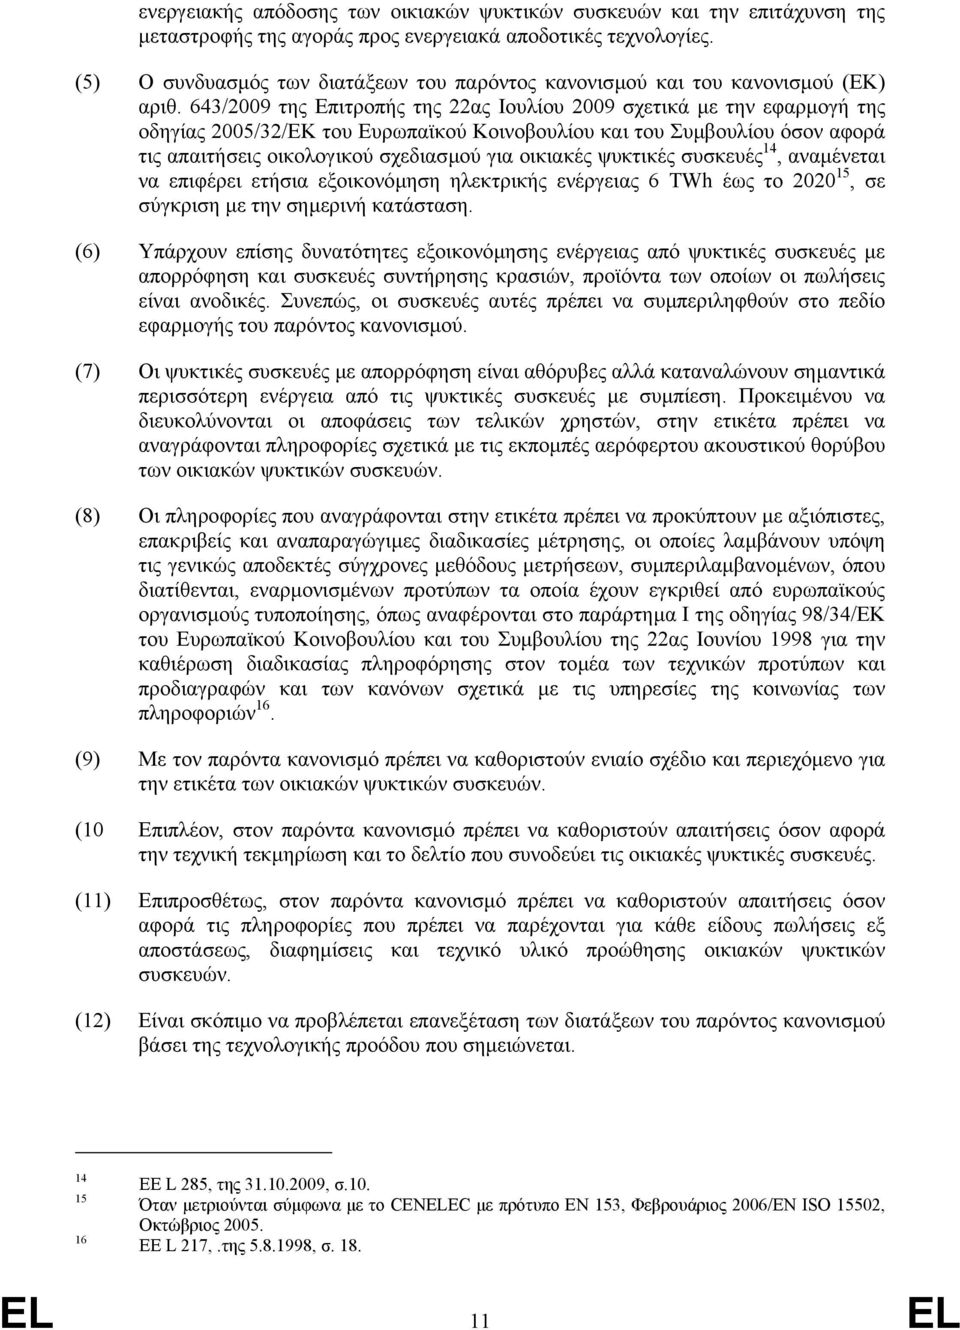 643/2009 της Επιτροπής της 22ας Ιουλίου 2009 σχετικά µε την εφαρµογή της οδηγίας 2005/32/ΕΚ του Ευρωπαϊκού Κοινοβουλίου και του Συµβουλίου όσον αφορά τις απαιτήσεις οικολογικού σχεδιασµού για